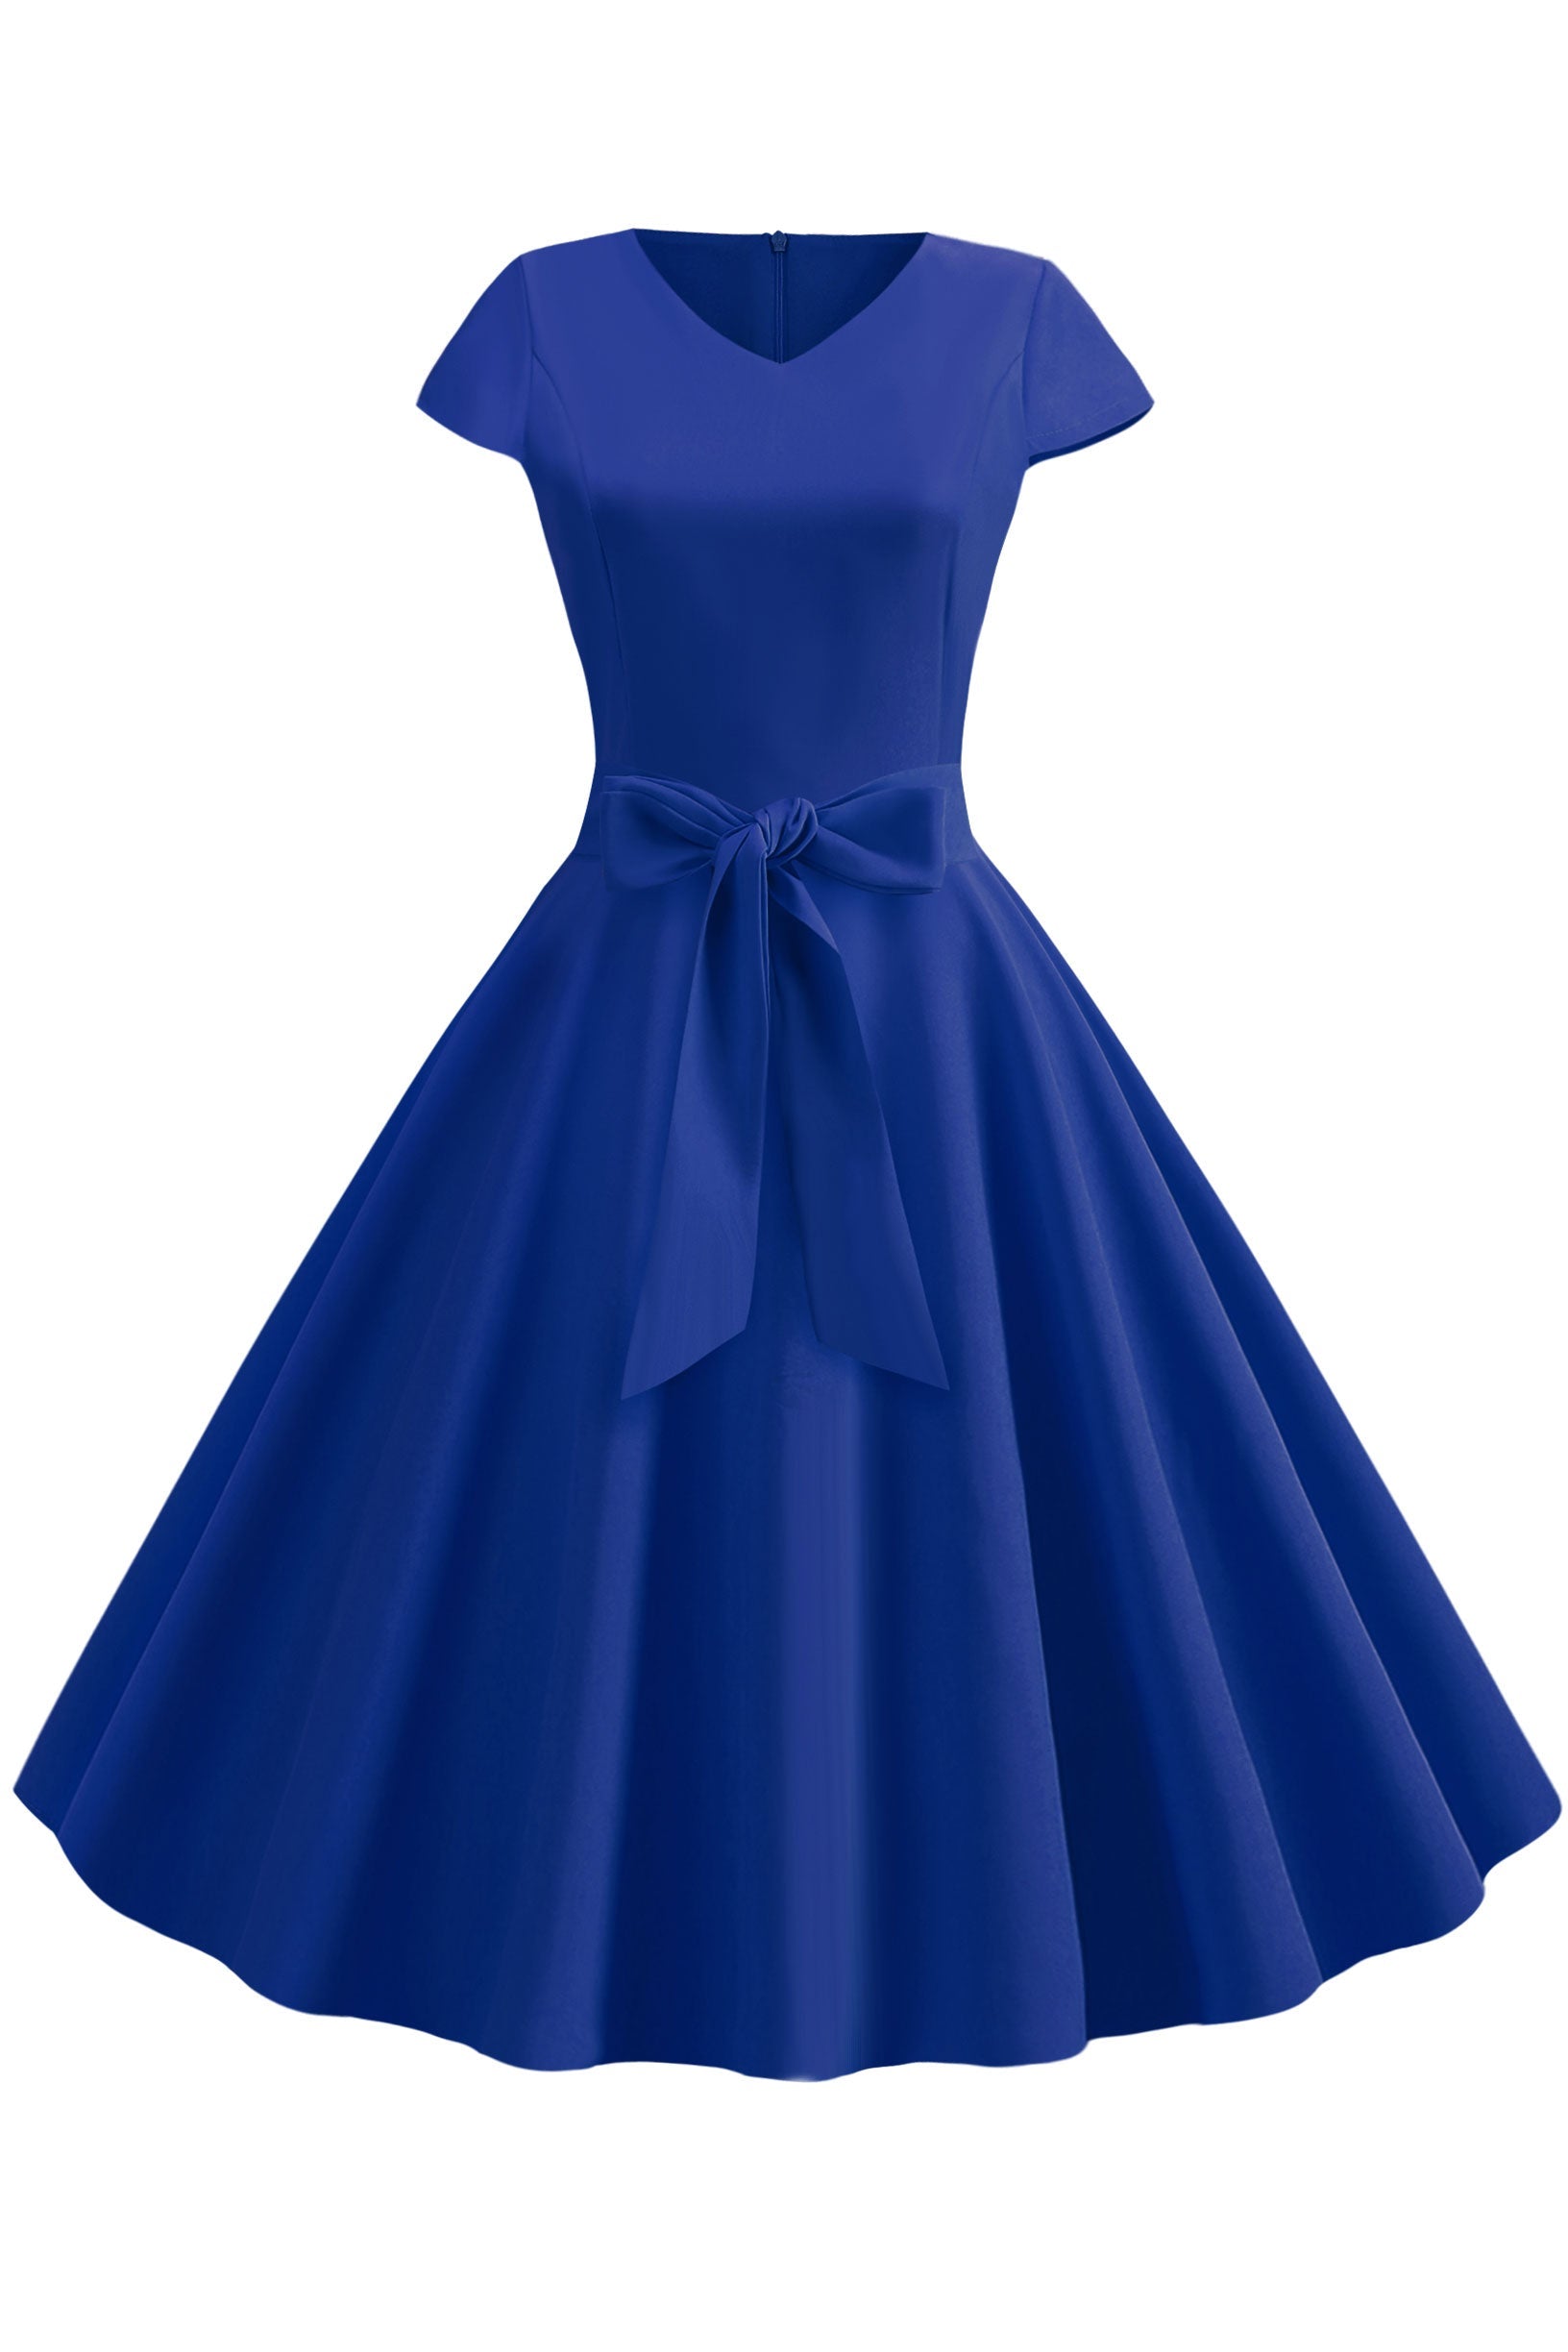 Vintage Hepburn V-neck Bowknot Swing Dress